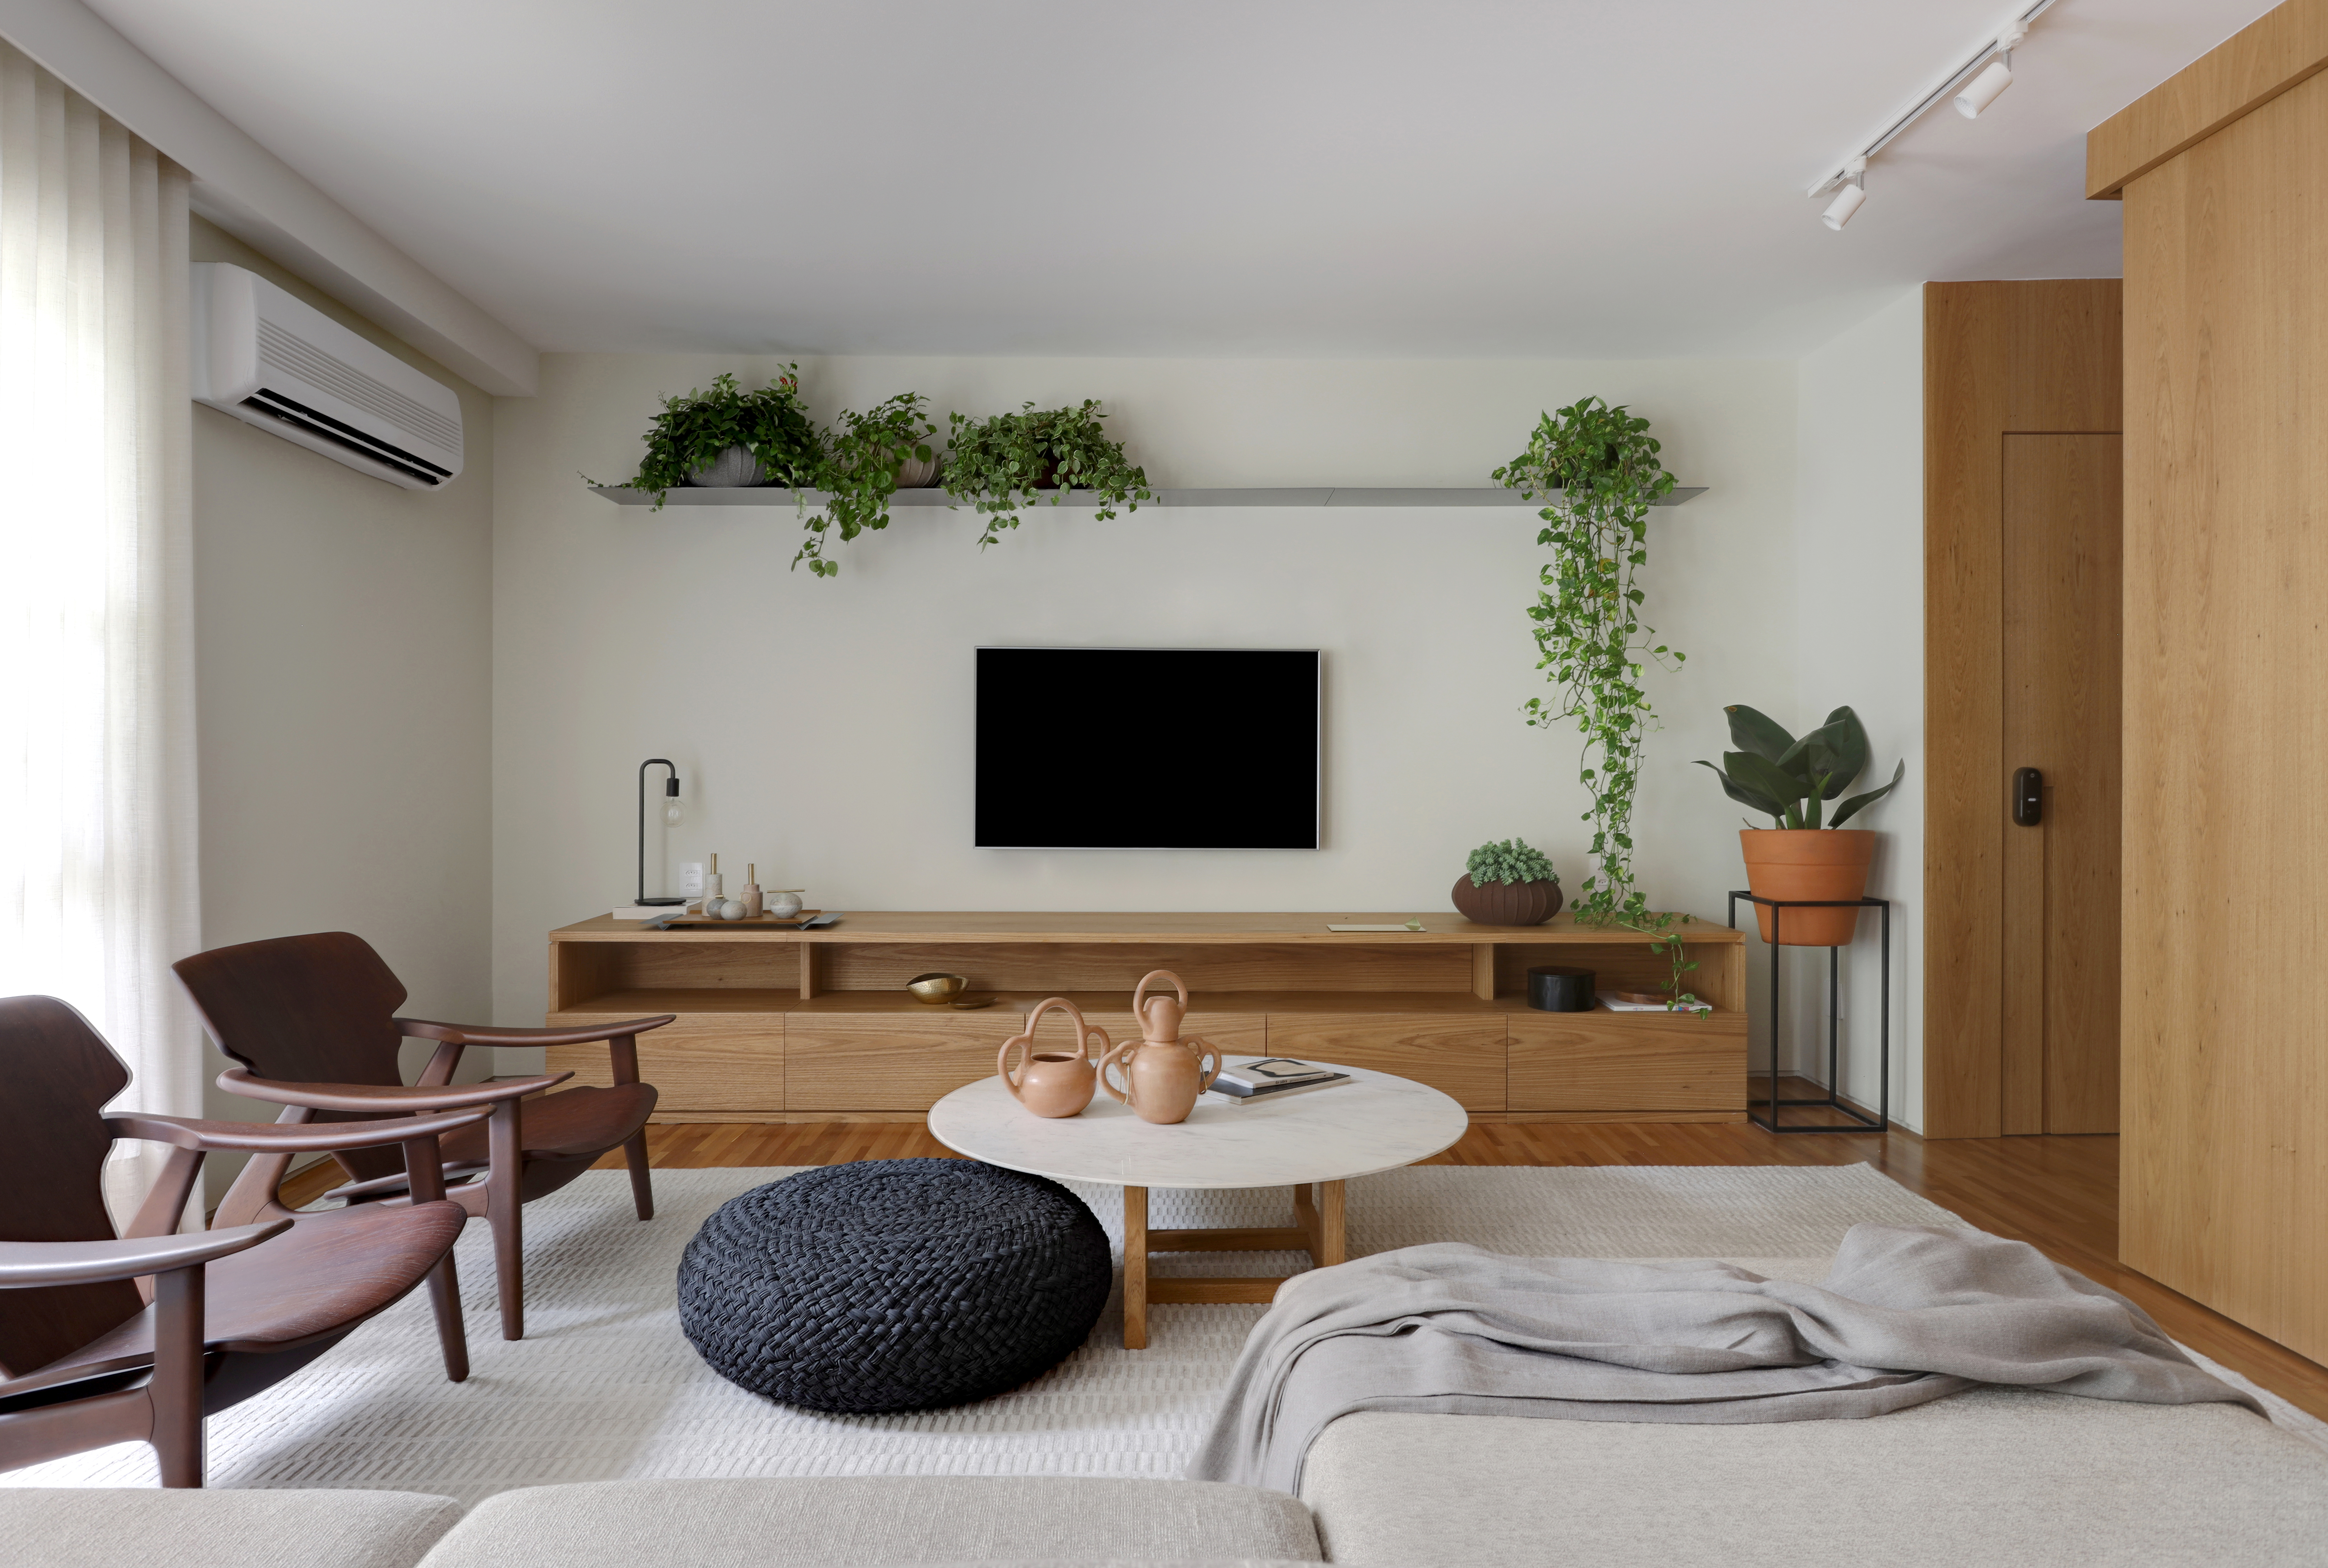  Apartament o powierzchni 180 m² ma półki z roślinami i botaniczne tapety